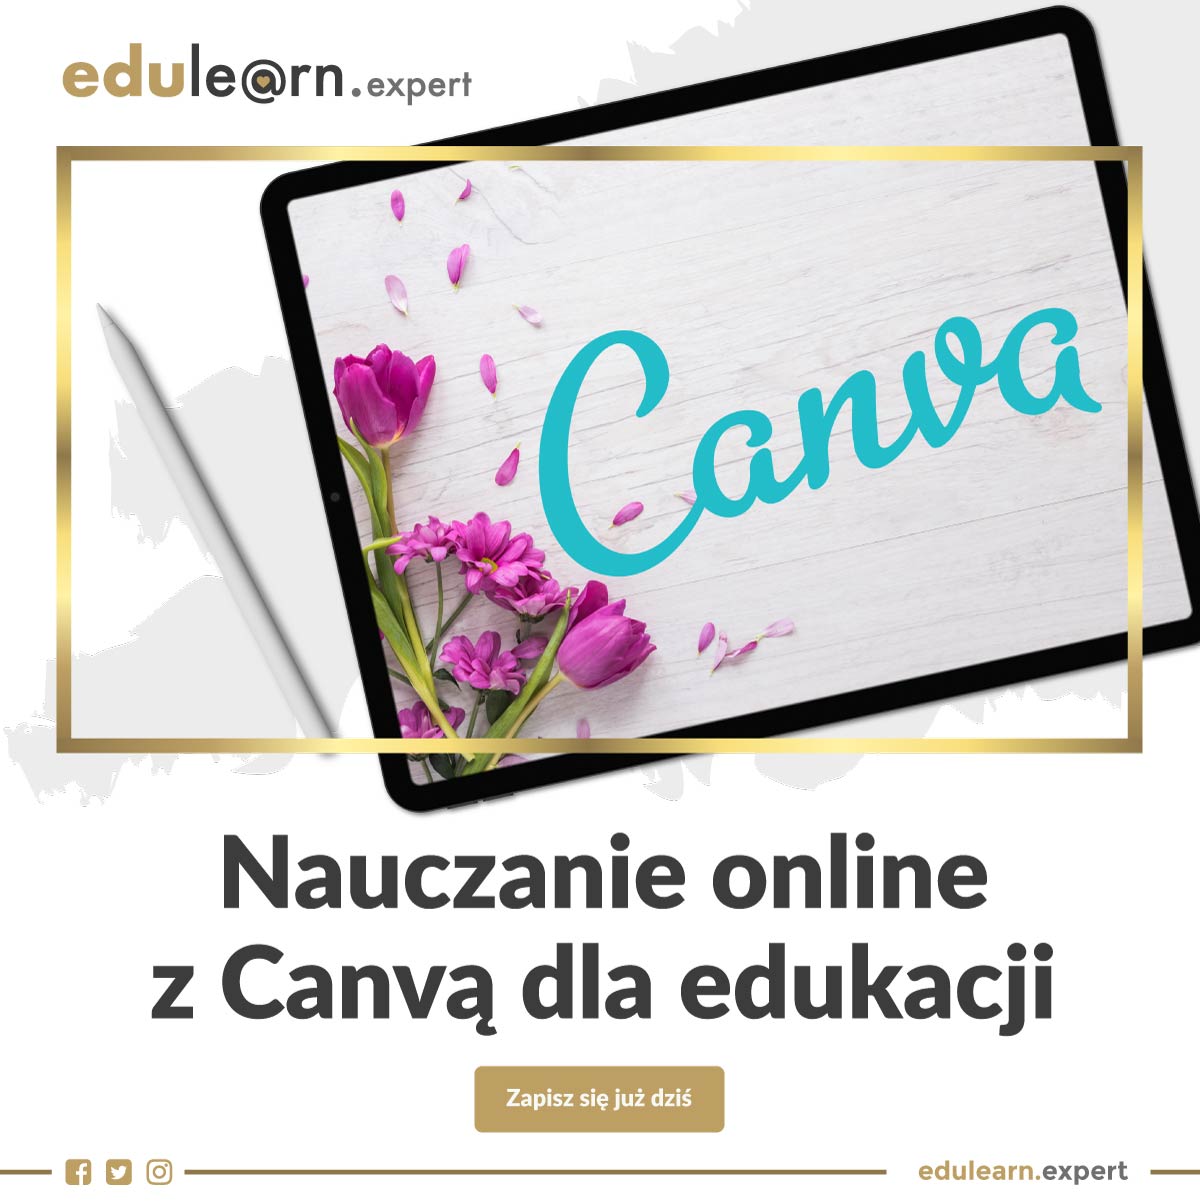 edulearn.expert | Nauczanie online z Canvą dla edukacji